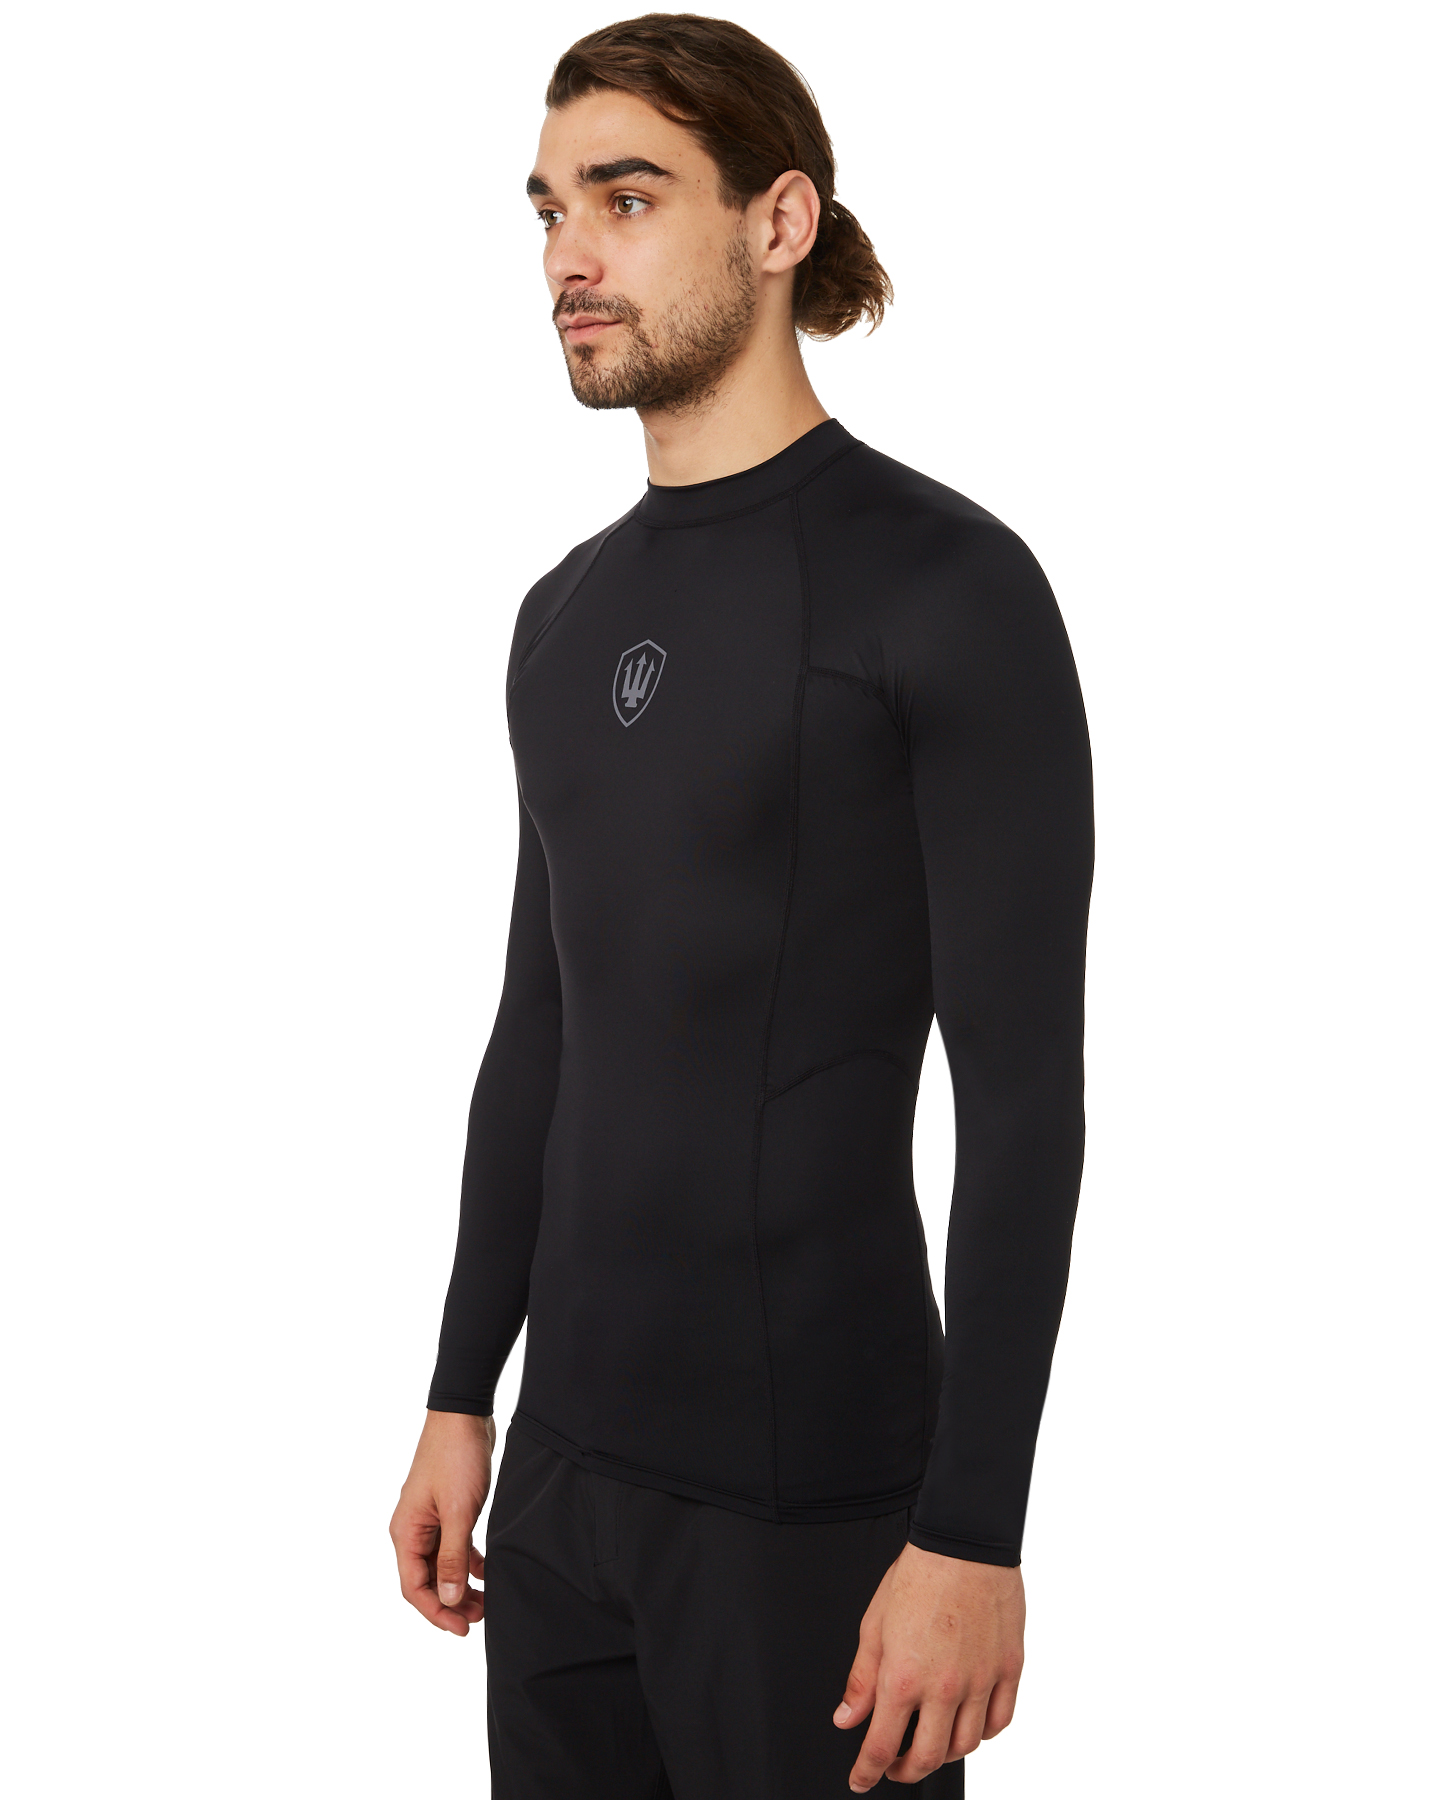 Fk Surf Mens Ls Rash Shirt - Black Grey | SurfStitch